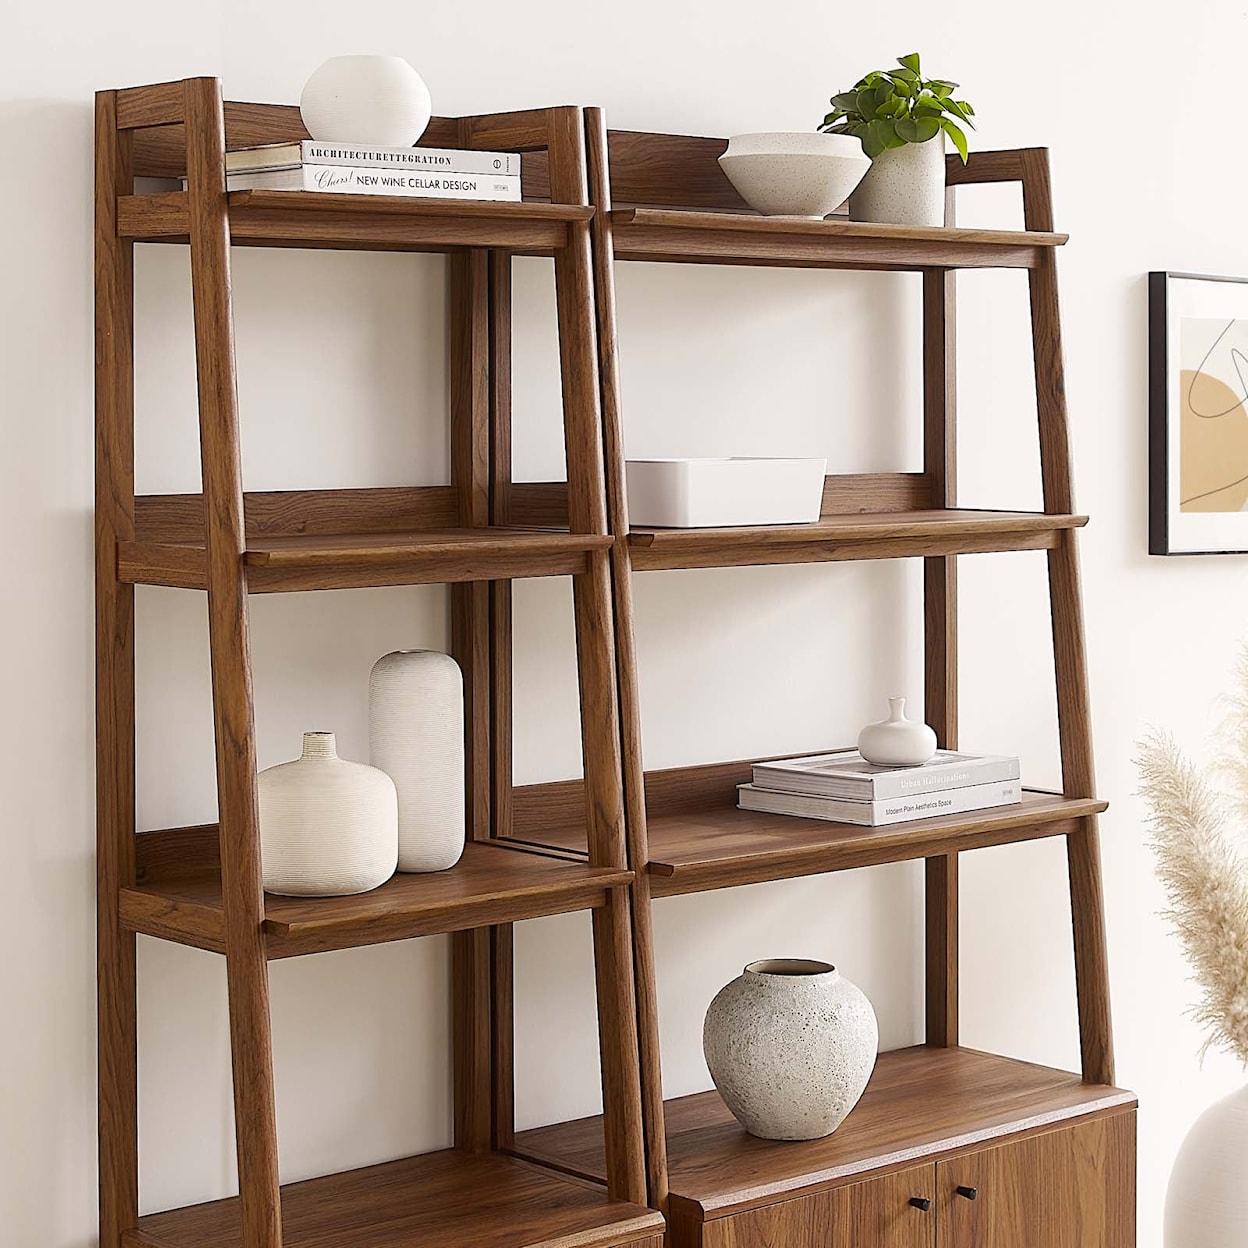 Modway Bixby Bixby Wood Bookshelves - Set of 2